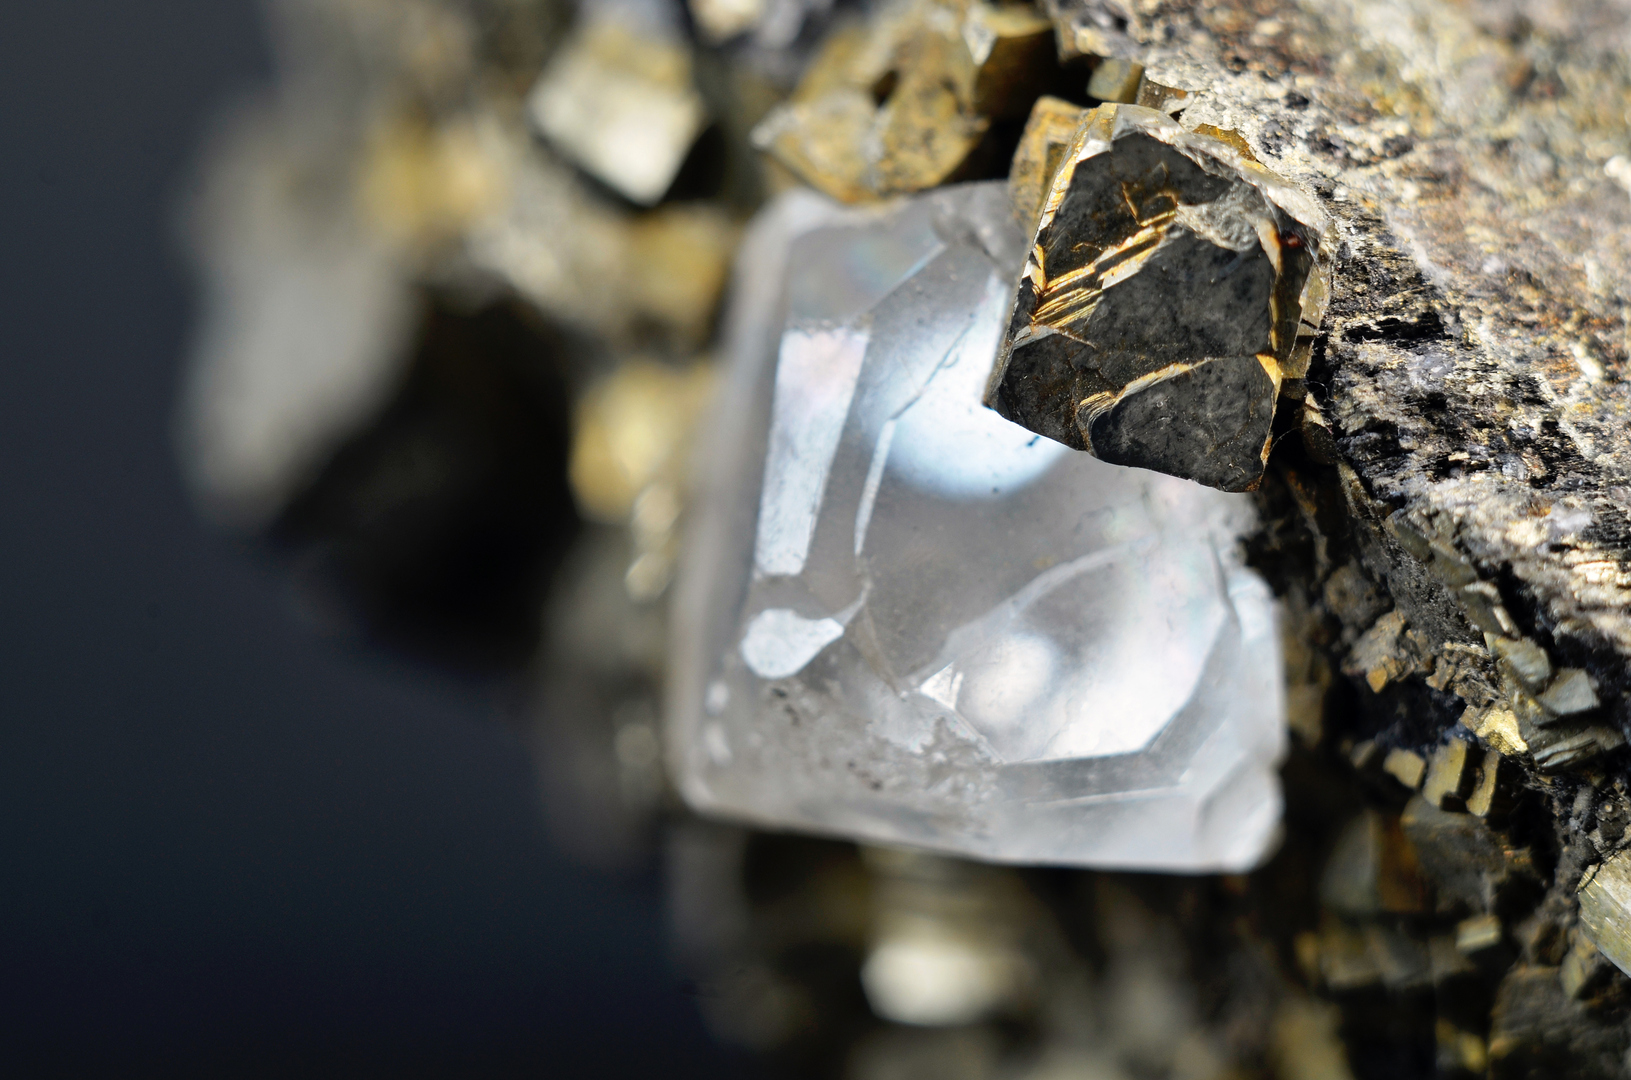 العثور على نوع نادر من الماس يكشف أسرار بيئة غنية بالمياه كامنة في باطن الأرض